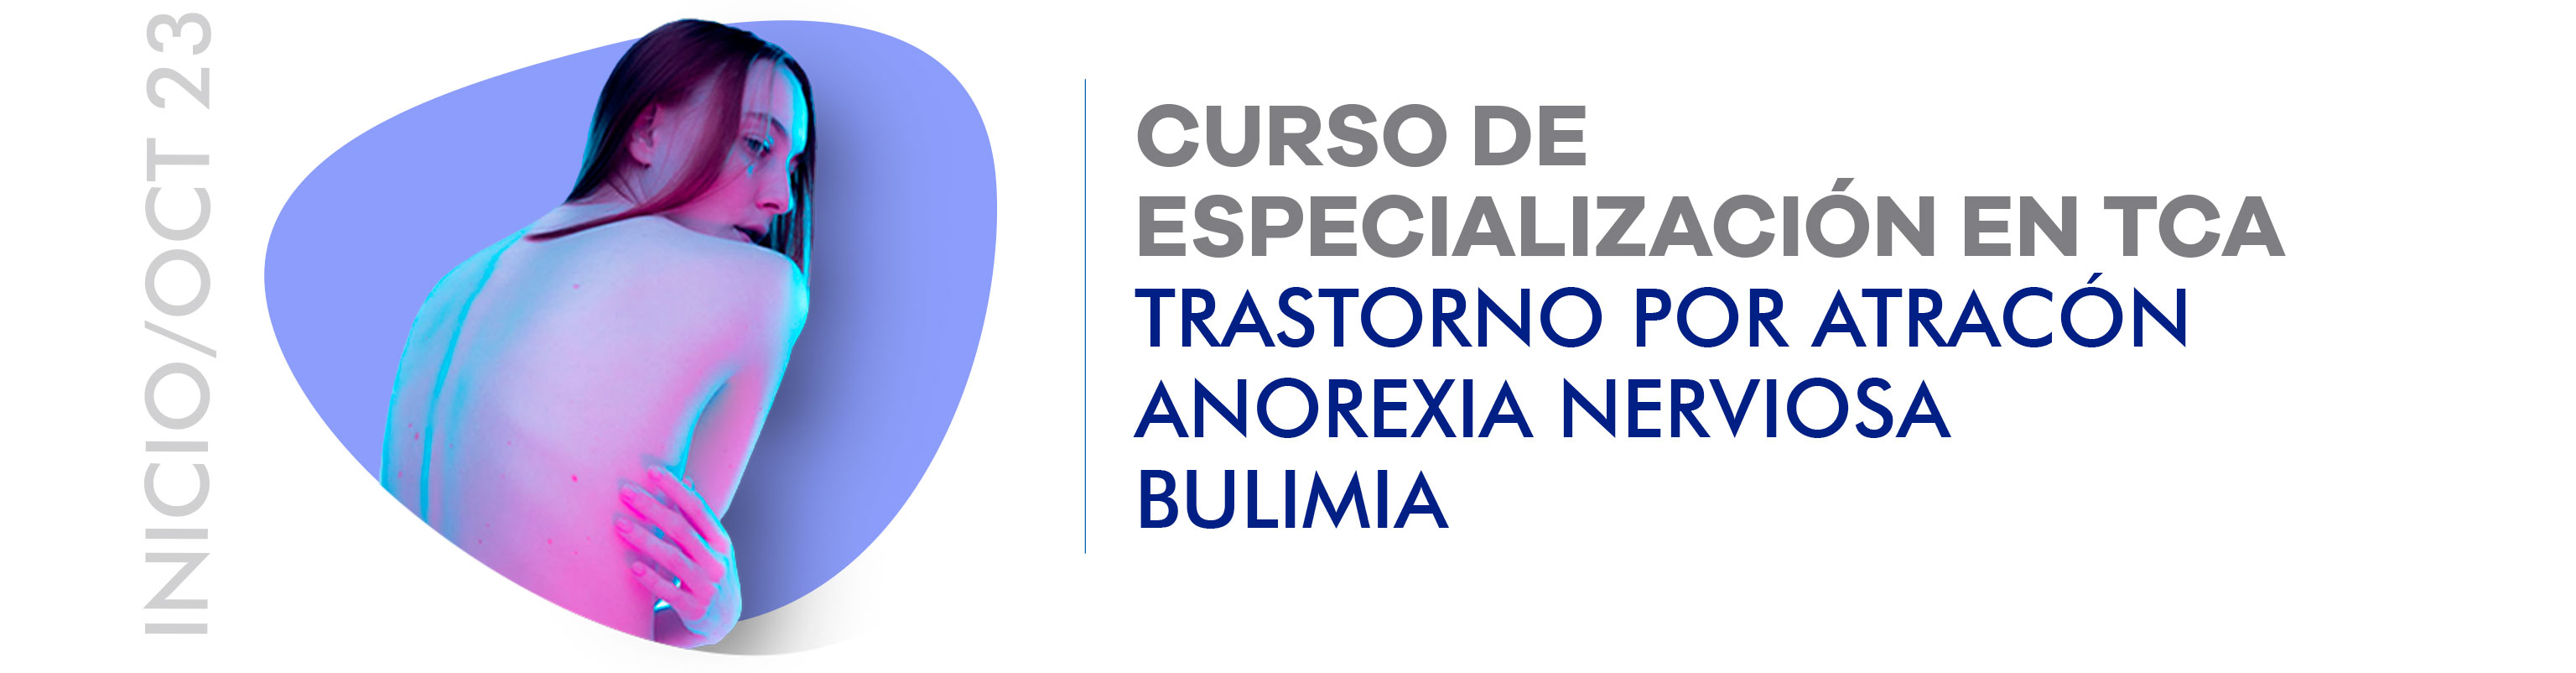 Curso de Especialización en TCA: Anorexia, Bulimia y Trastorno por Atracón